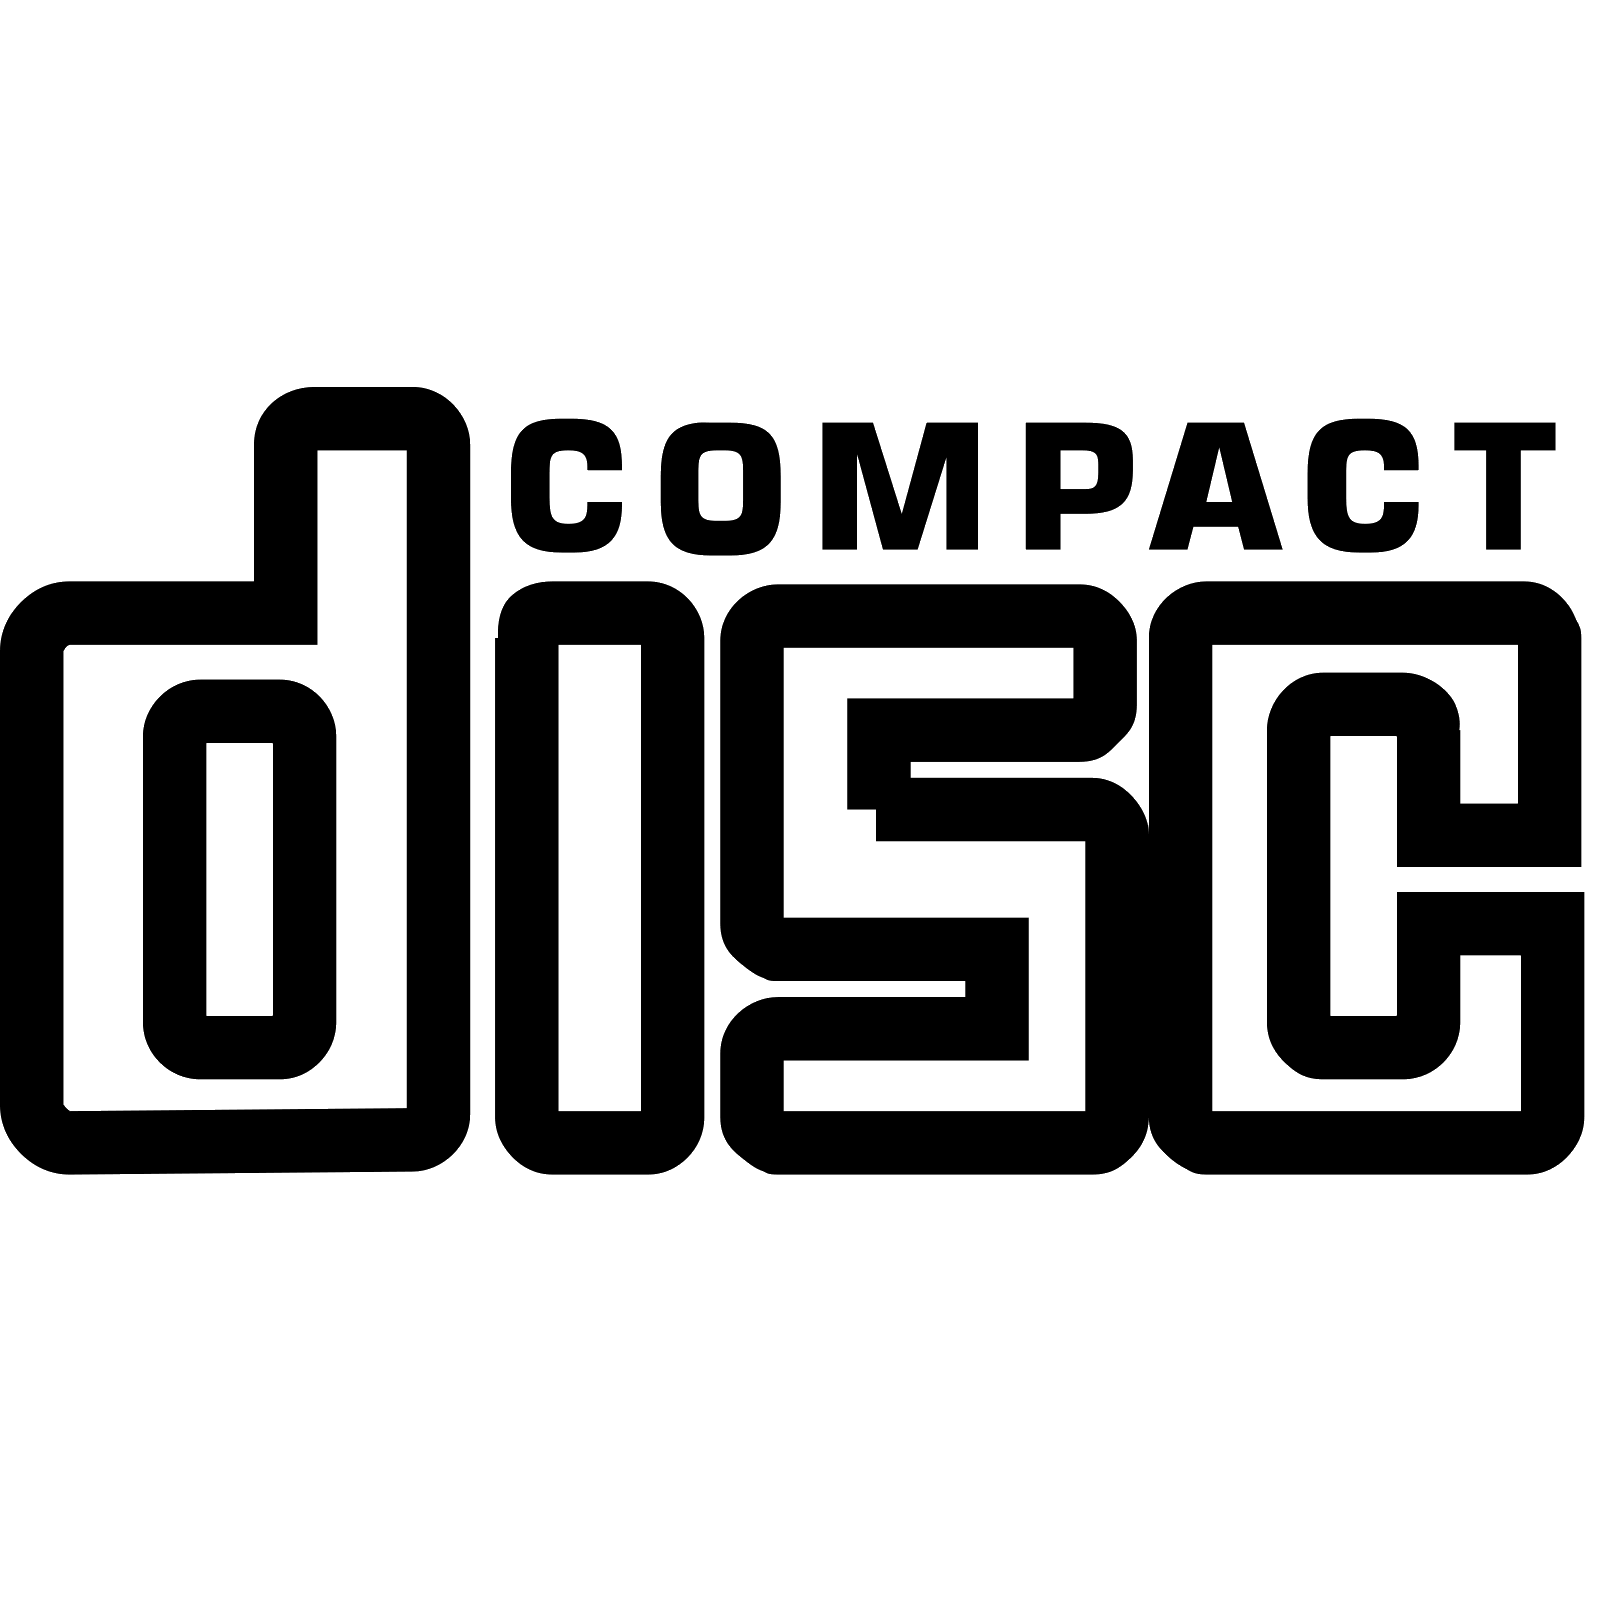 Лого диск. Compact Disc Digital Audio. Compact Disk лого. Логотип CD Audio. Надпись на компакт диск.